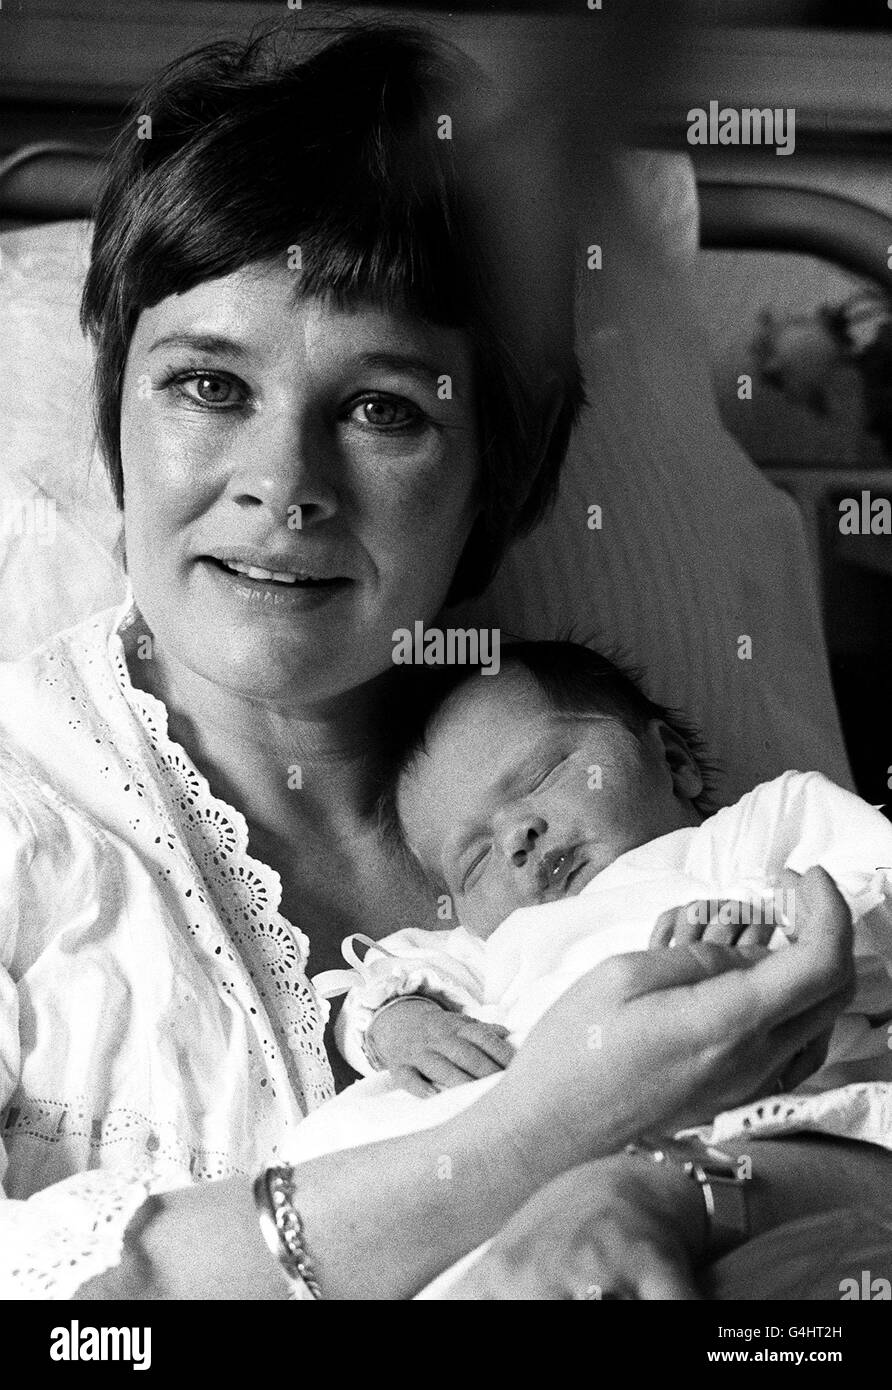 Schauspielerin Judi Dench 37, mit ihrem ersten Baby, einem 7,5 Pfund schweren Mädchen namens Finty, in einer Klinik im Nordwesten Londons. Judi ist mit Michael Williams verheiratet, einem Mitschauspieler in der Produktion von 'London Assurance' der Royal Shakespeare Company, in der sie beide auftraten. Stockfoto